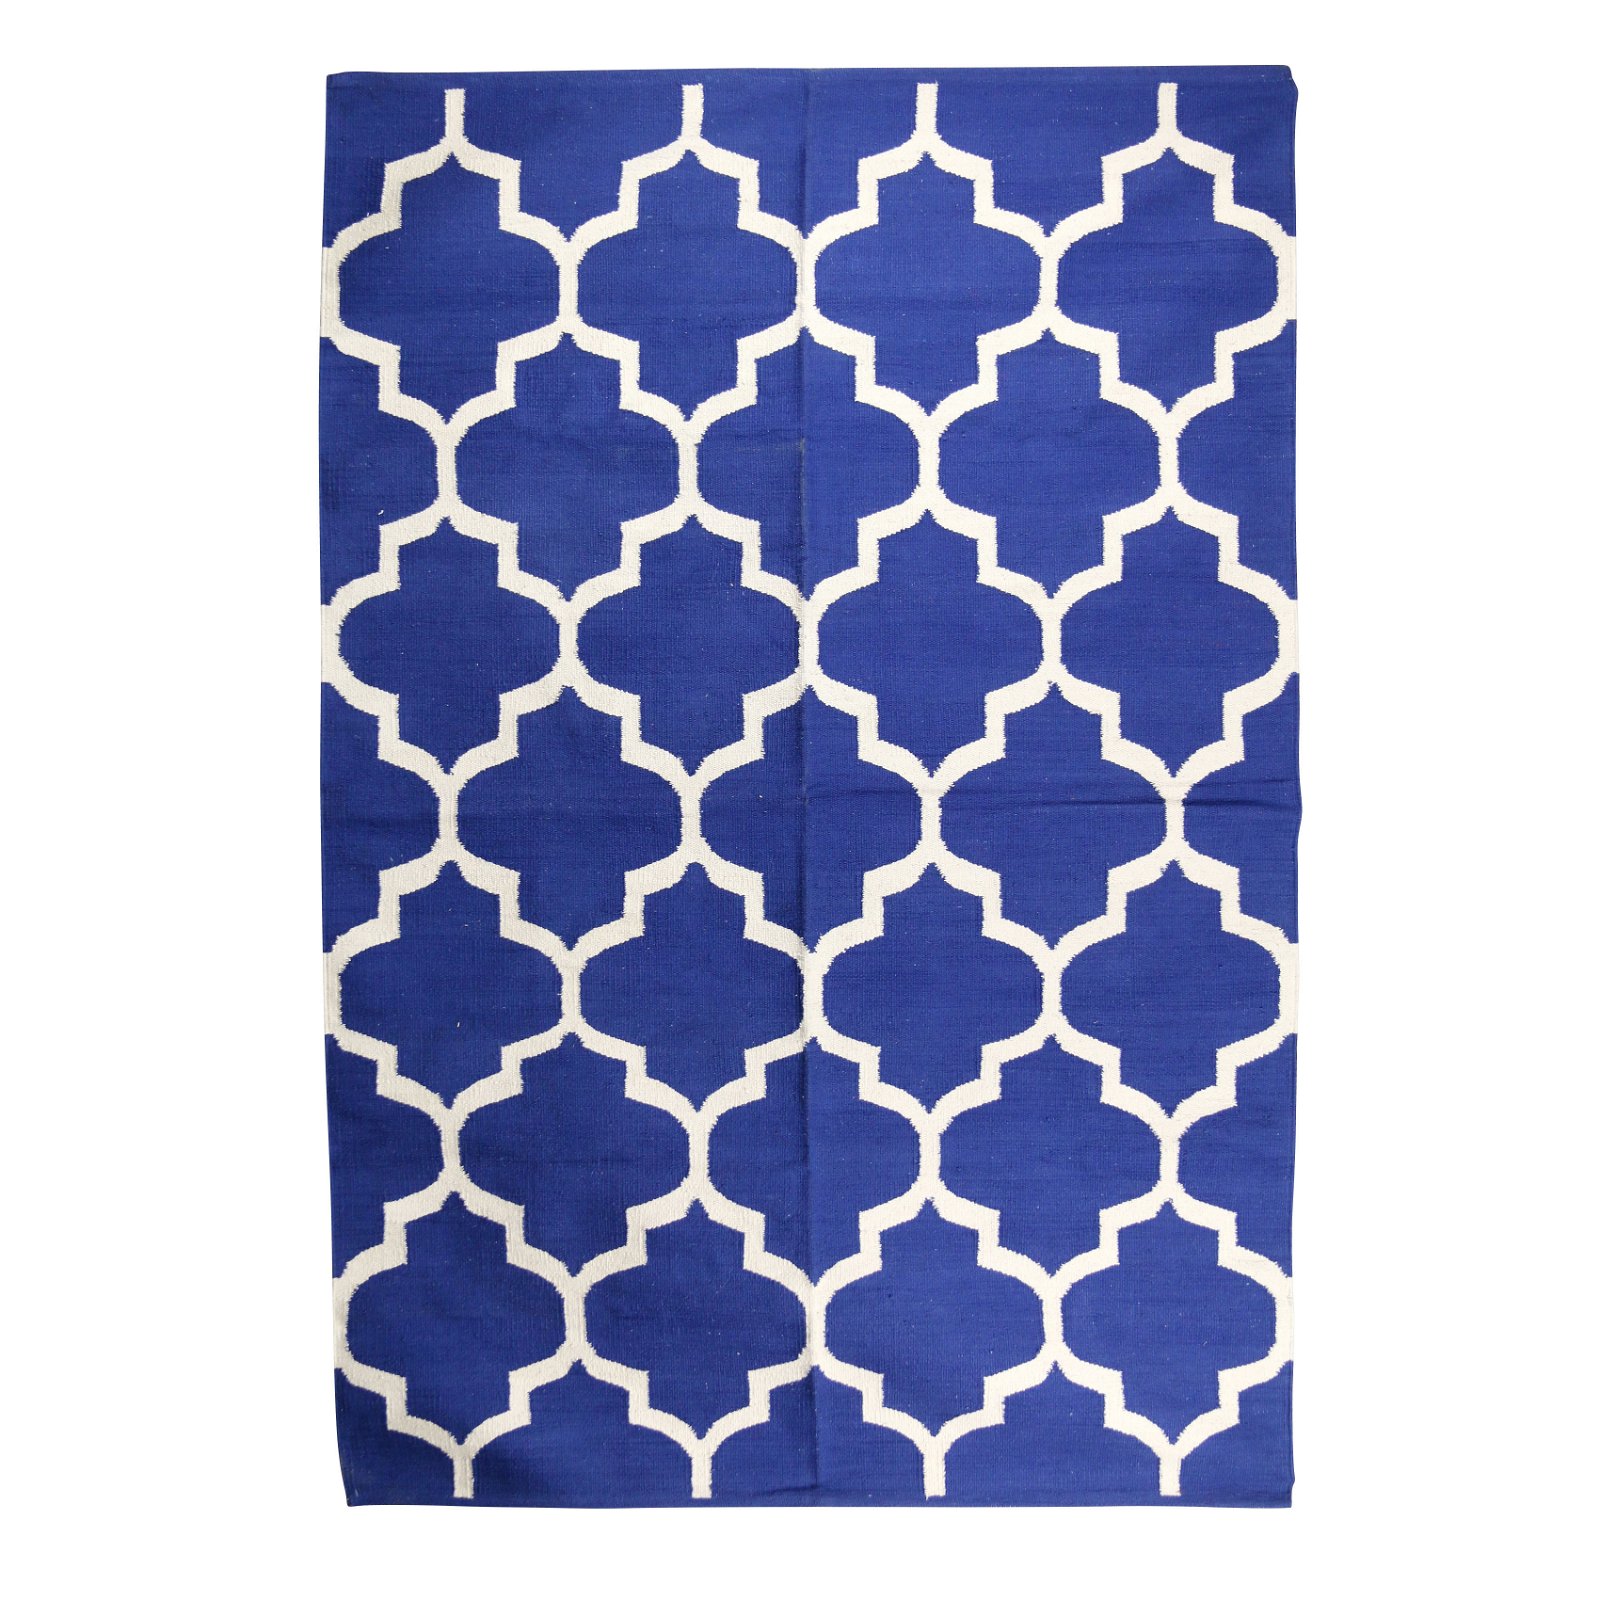 Teppich blau weiß Jaqard Baumwolle, 180 x 120 cm